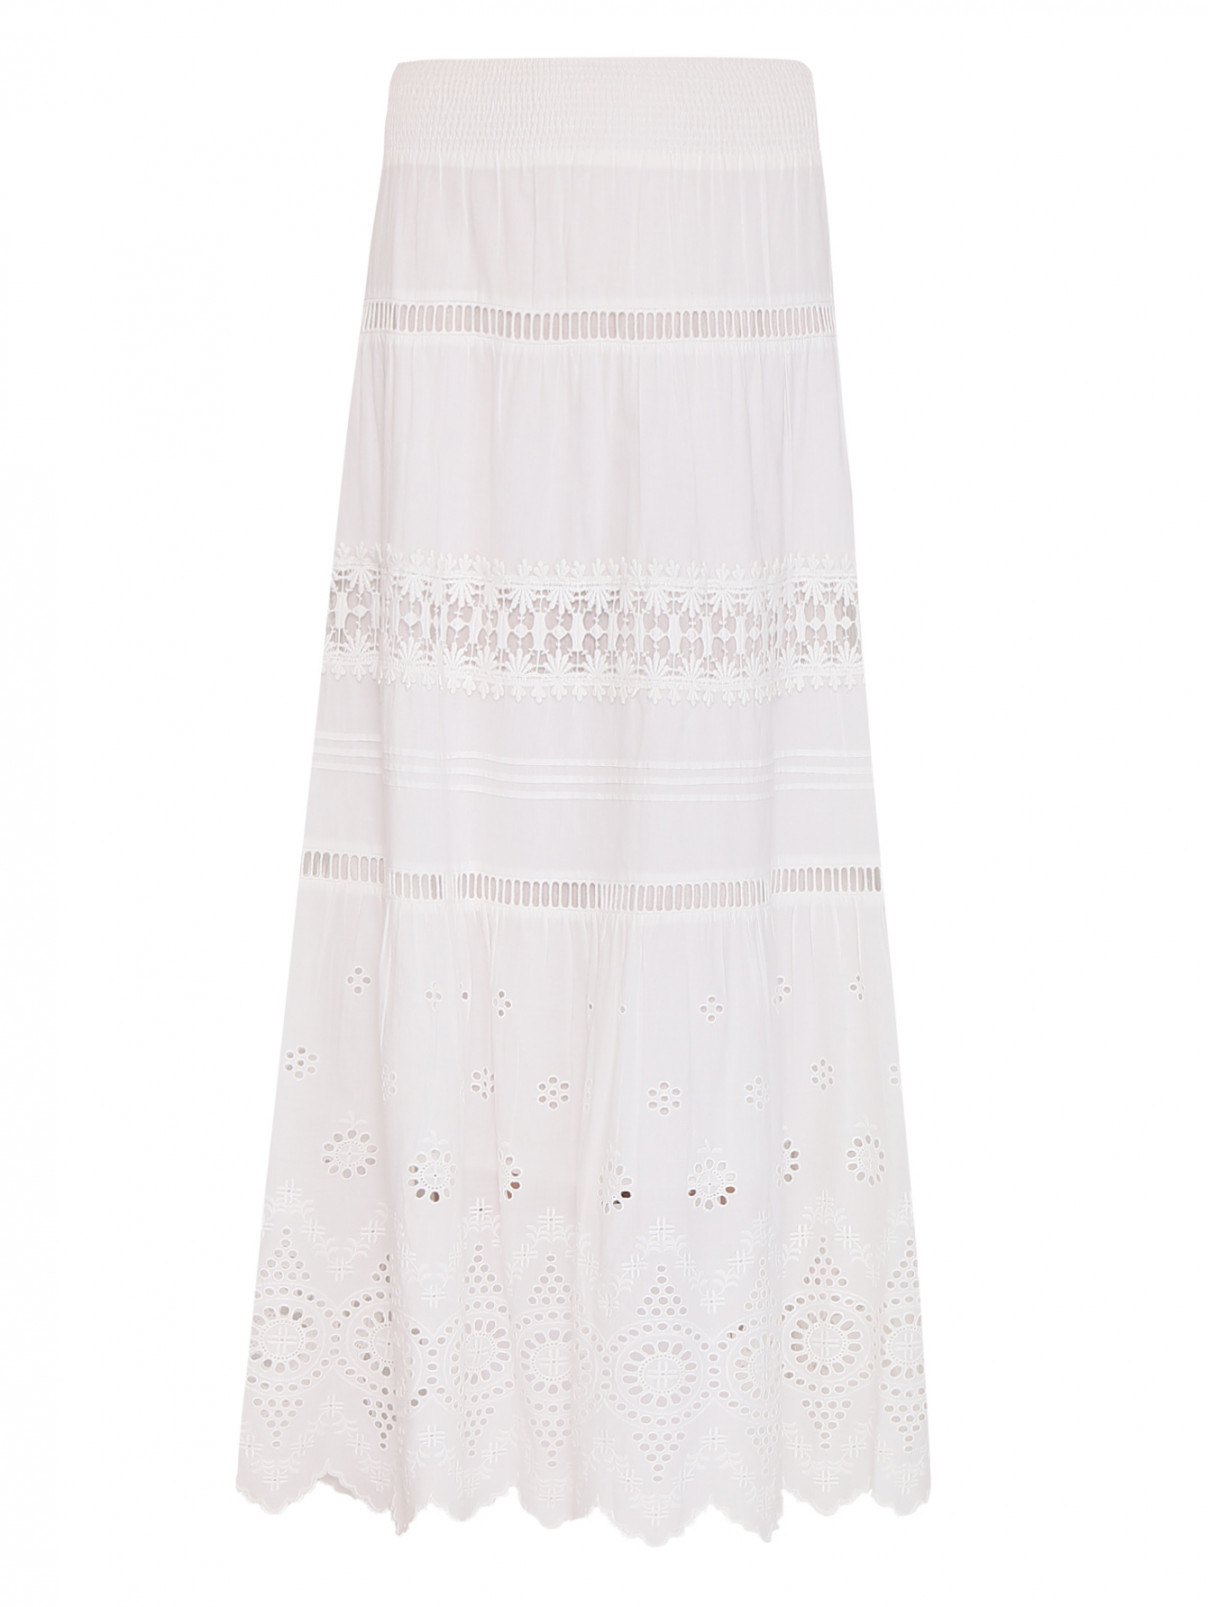 Юбка-миди из хлопка с вышивкой Luisa Spagnoli  –  Общий вид  – Цвет:  Белый